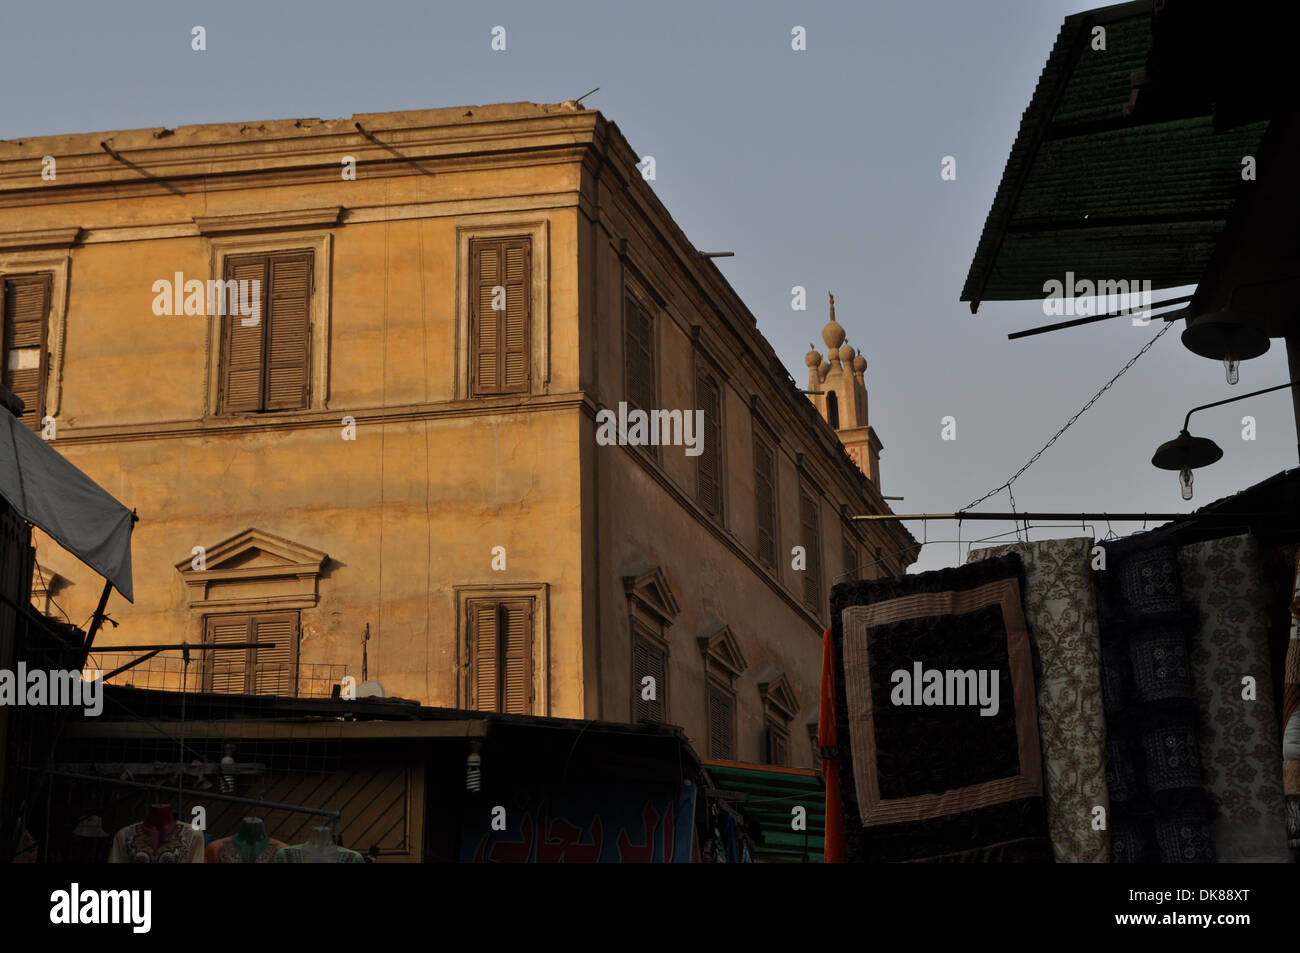 Le merci sono appese in un mercato di fronte a palazzi signorili storici nell'antico quartiere islamico della capitale egiziana il Cairo. Foto Stock